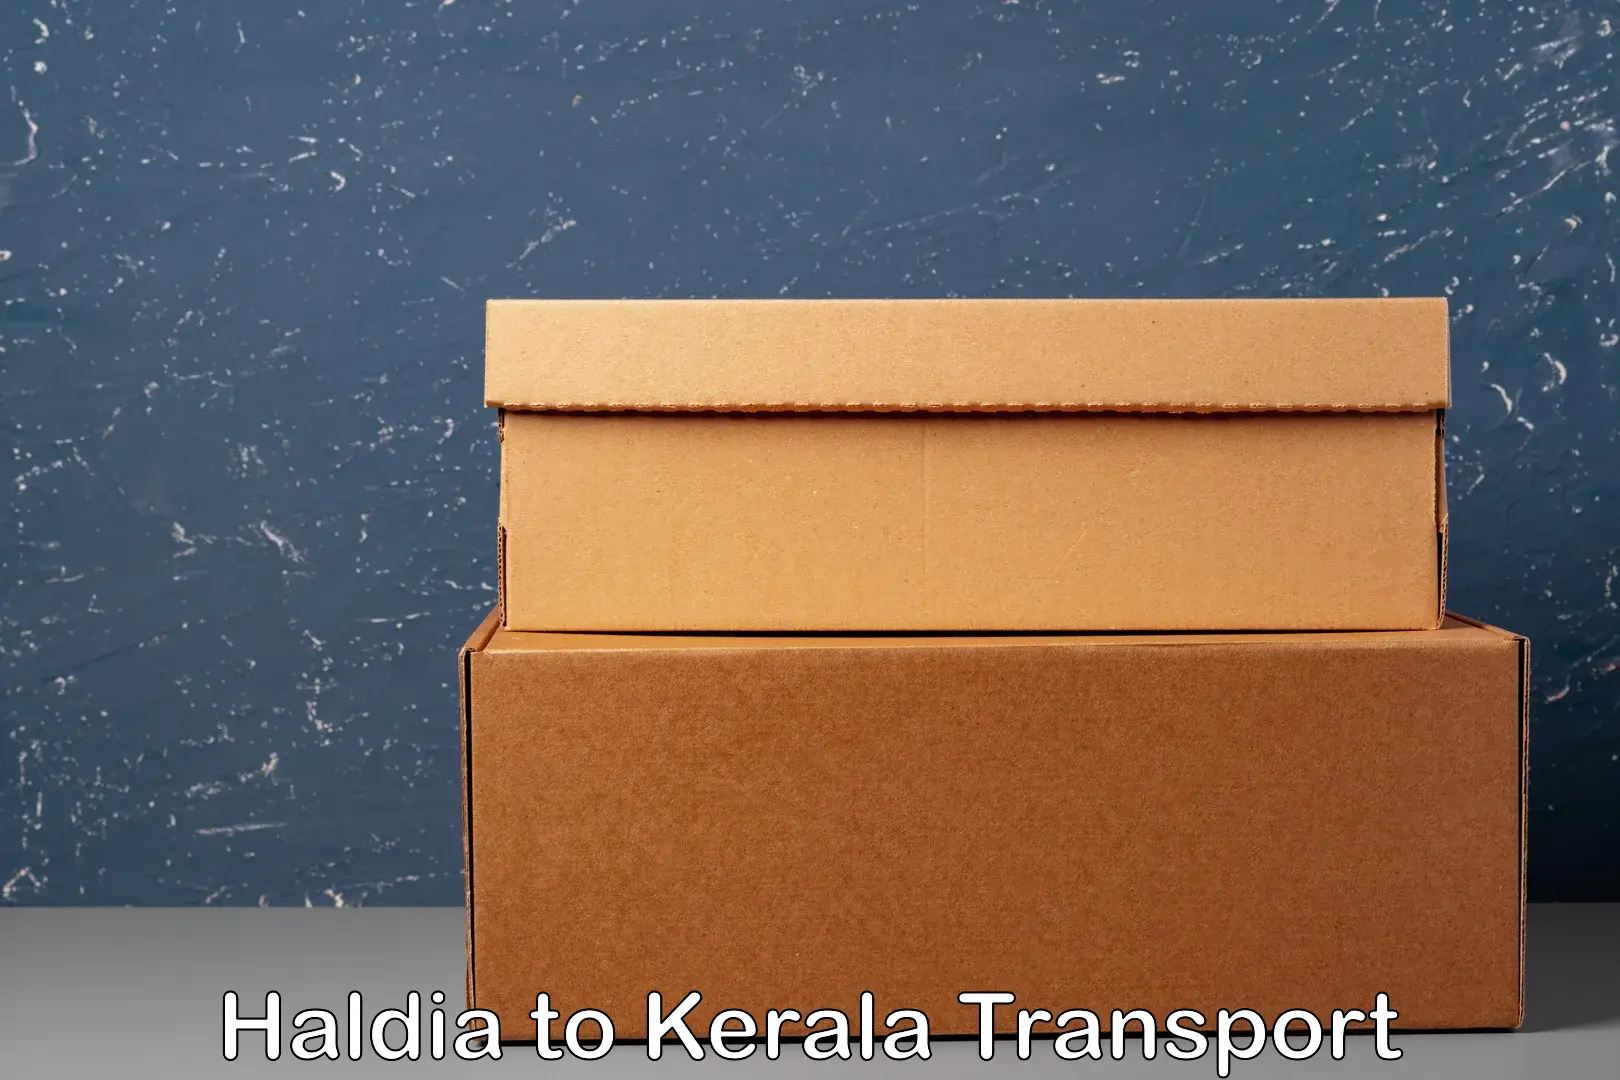 Delivery service in Haldia to Anjumoorthy